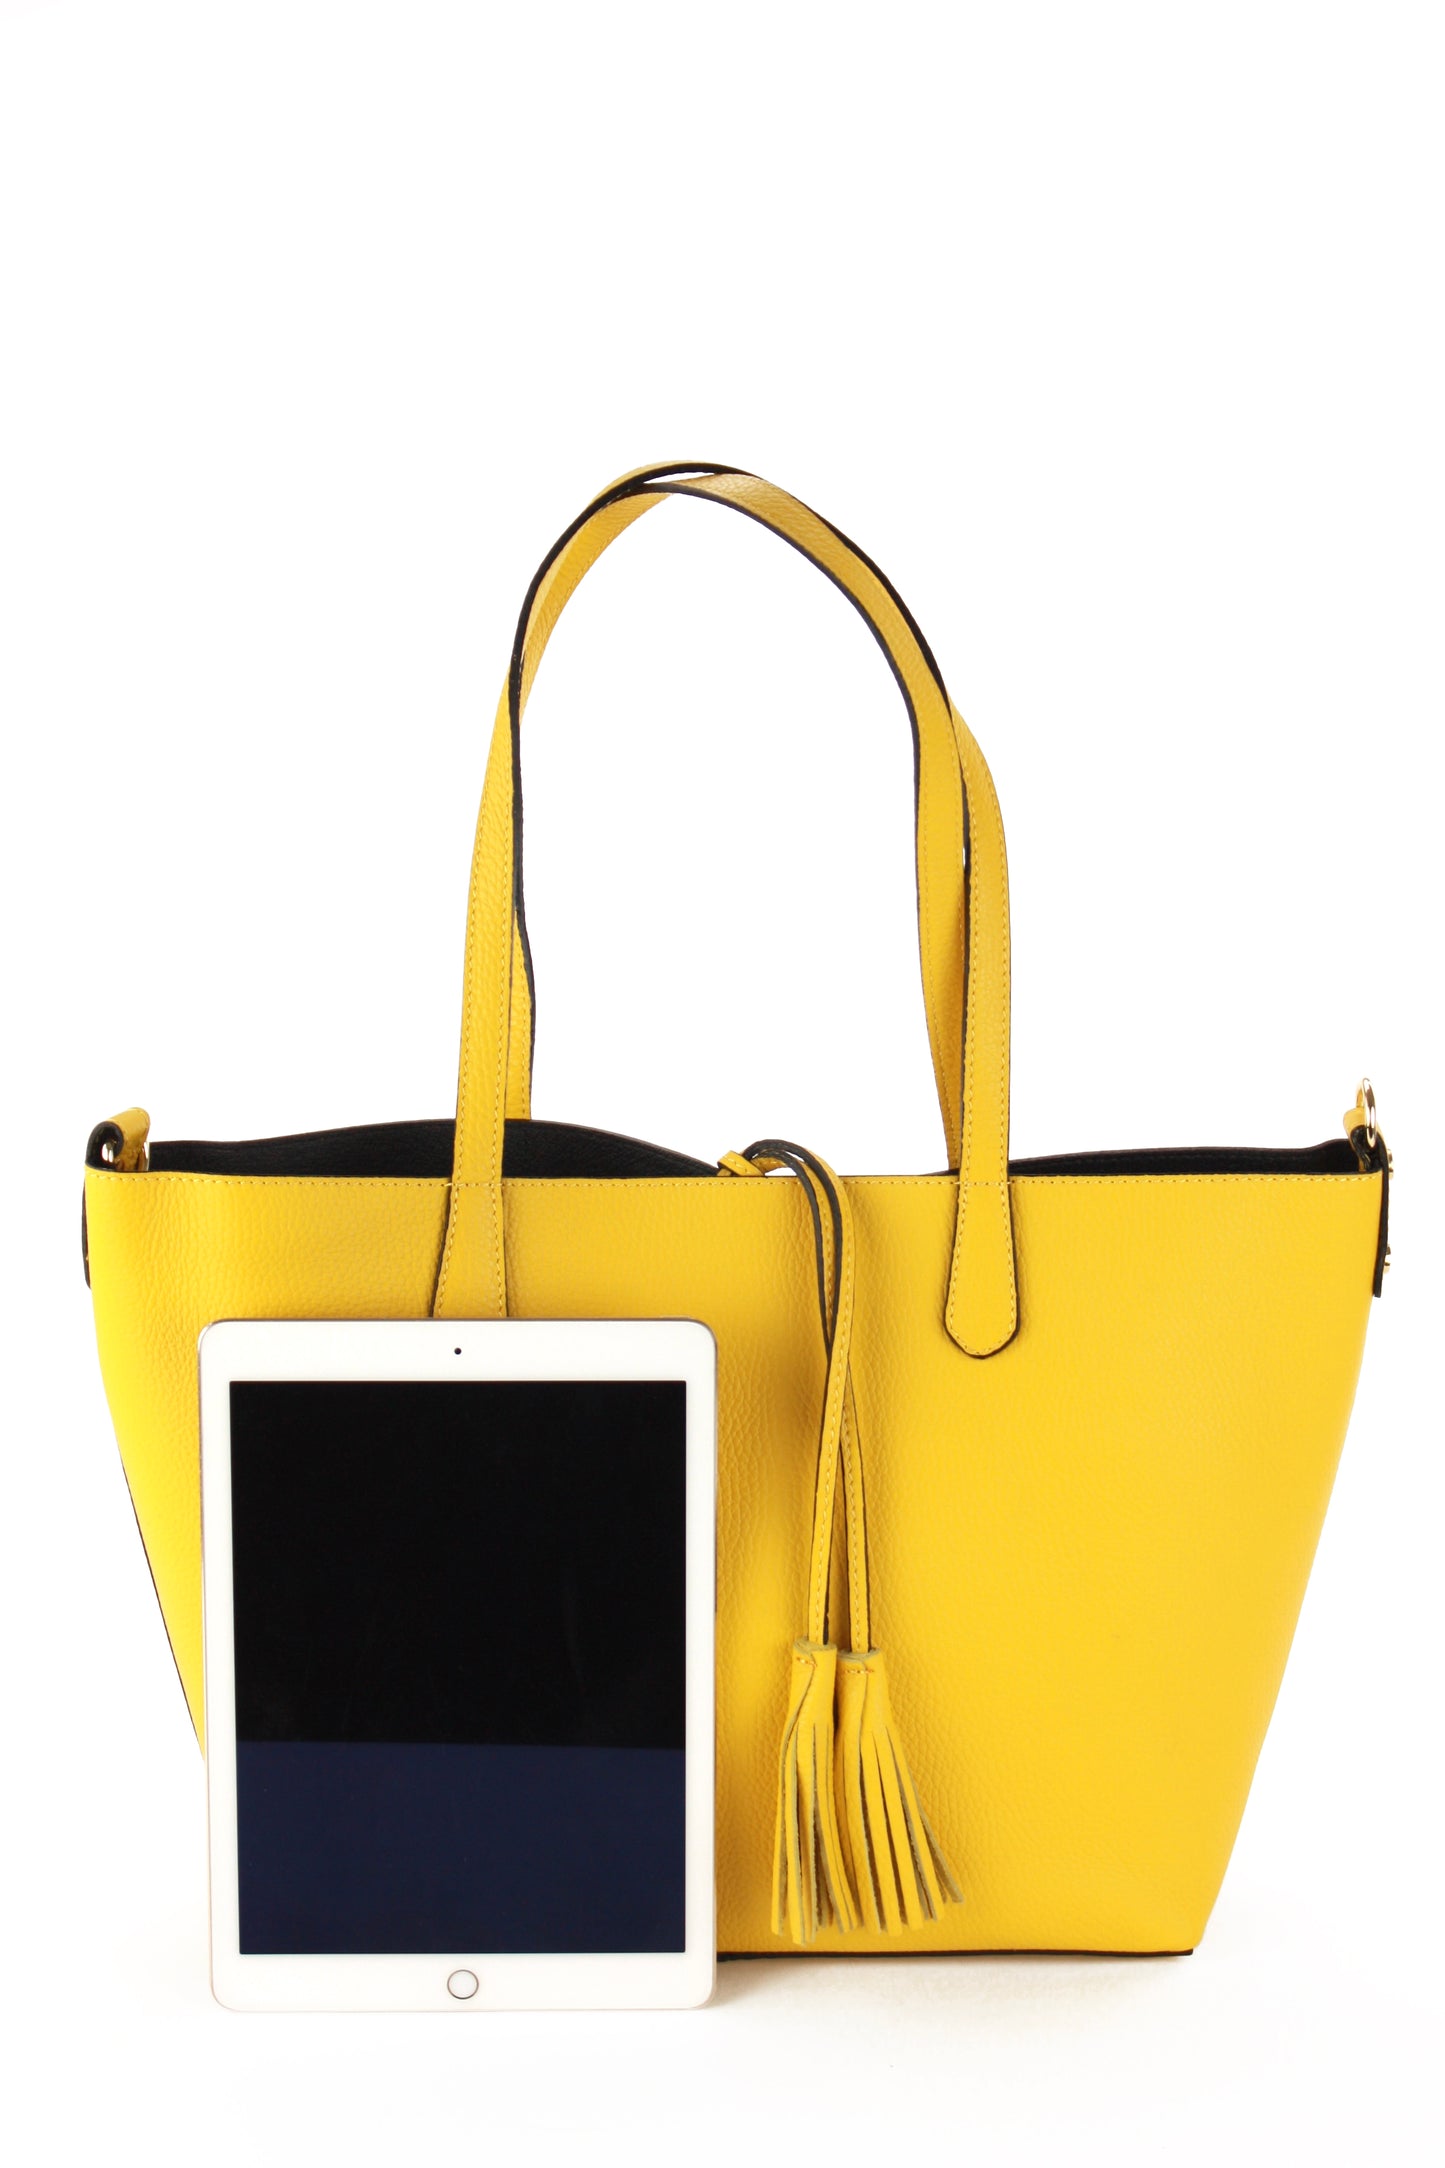 Belinda shopping bag in yellow